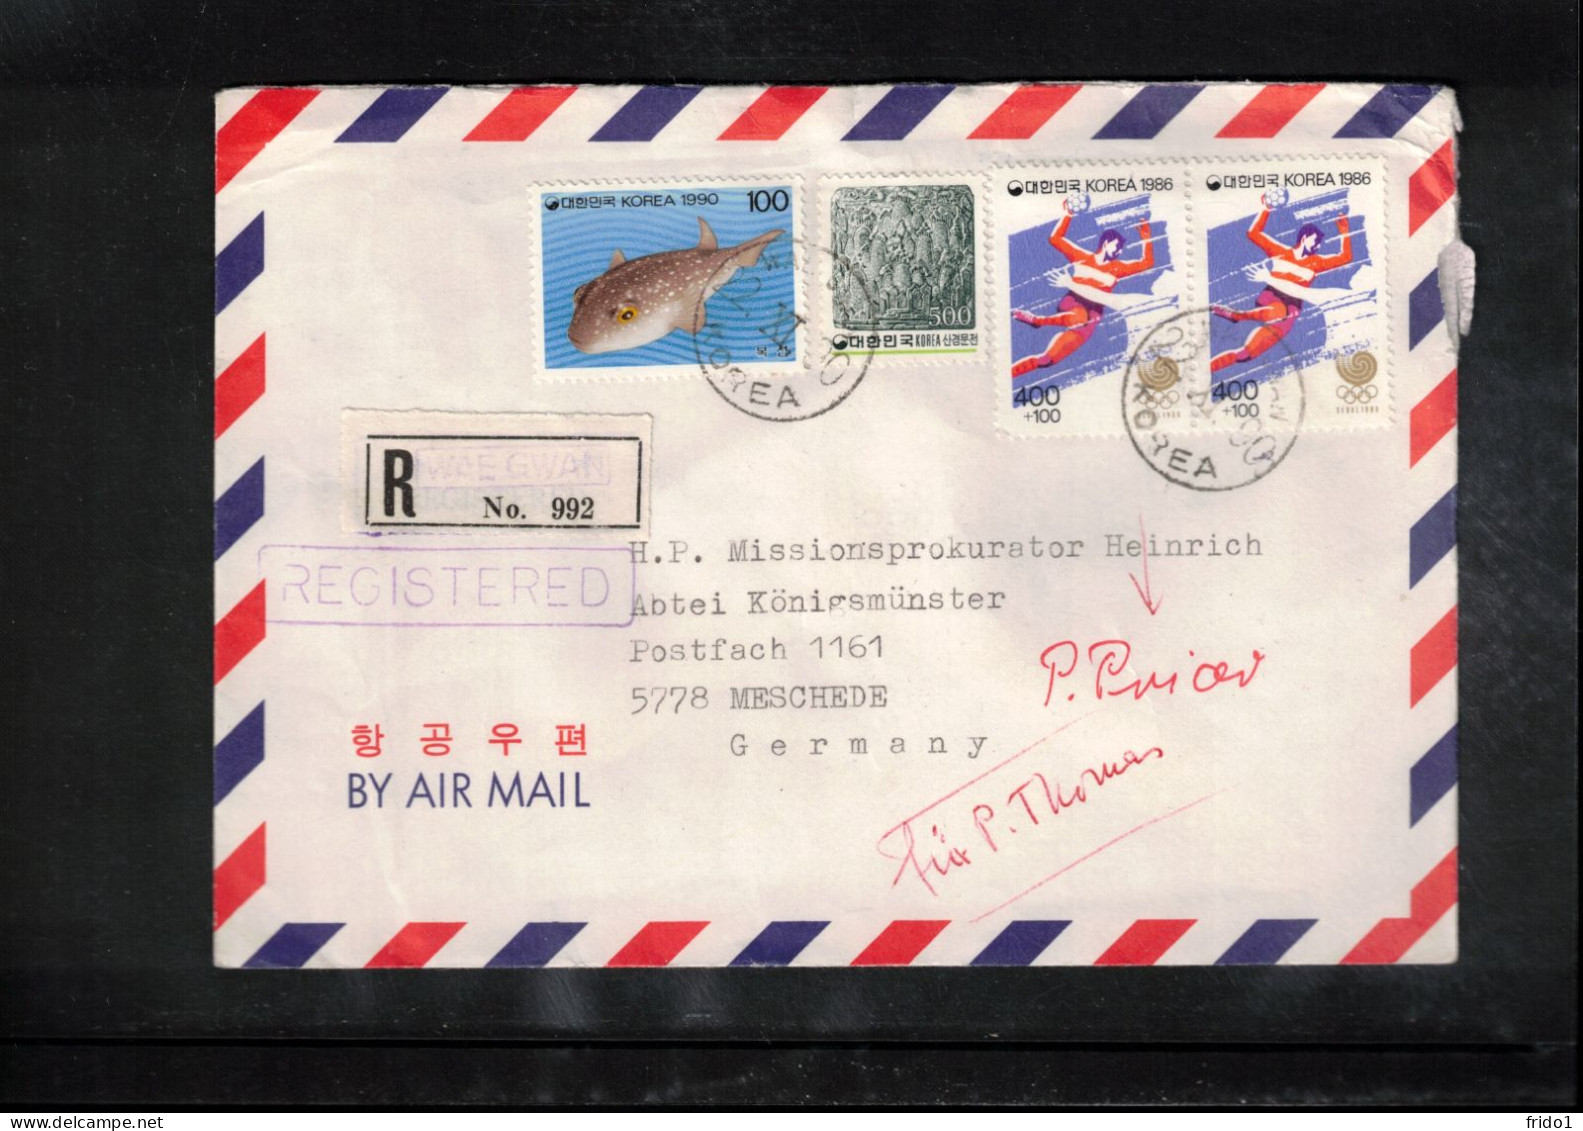 South Korea 1990 Interesting Airmail Registered Letter - Korea, South